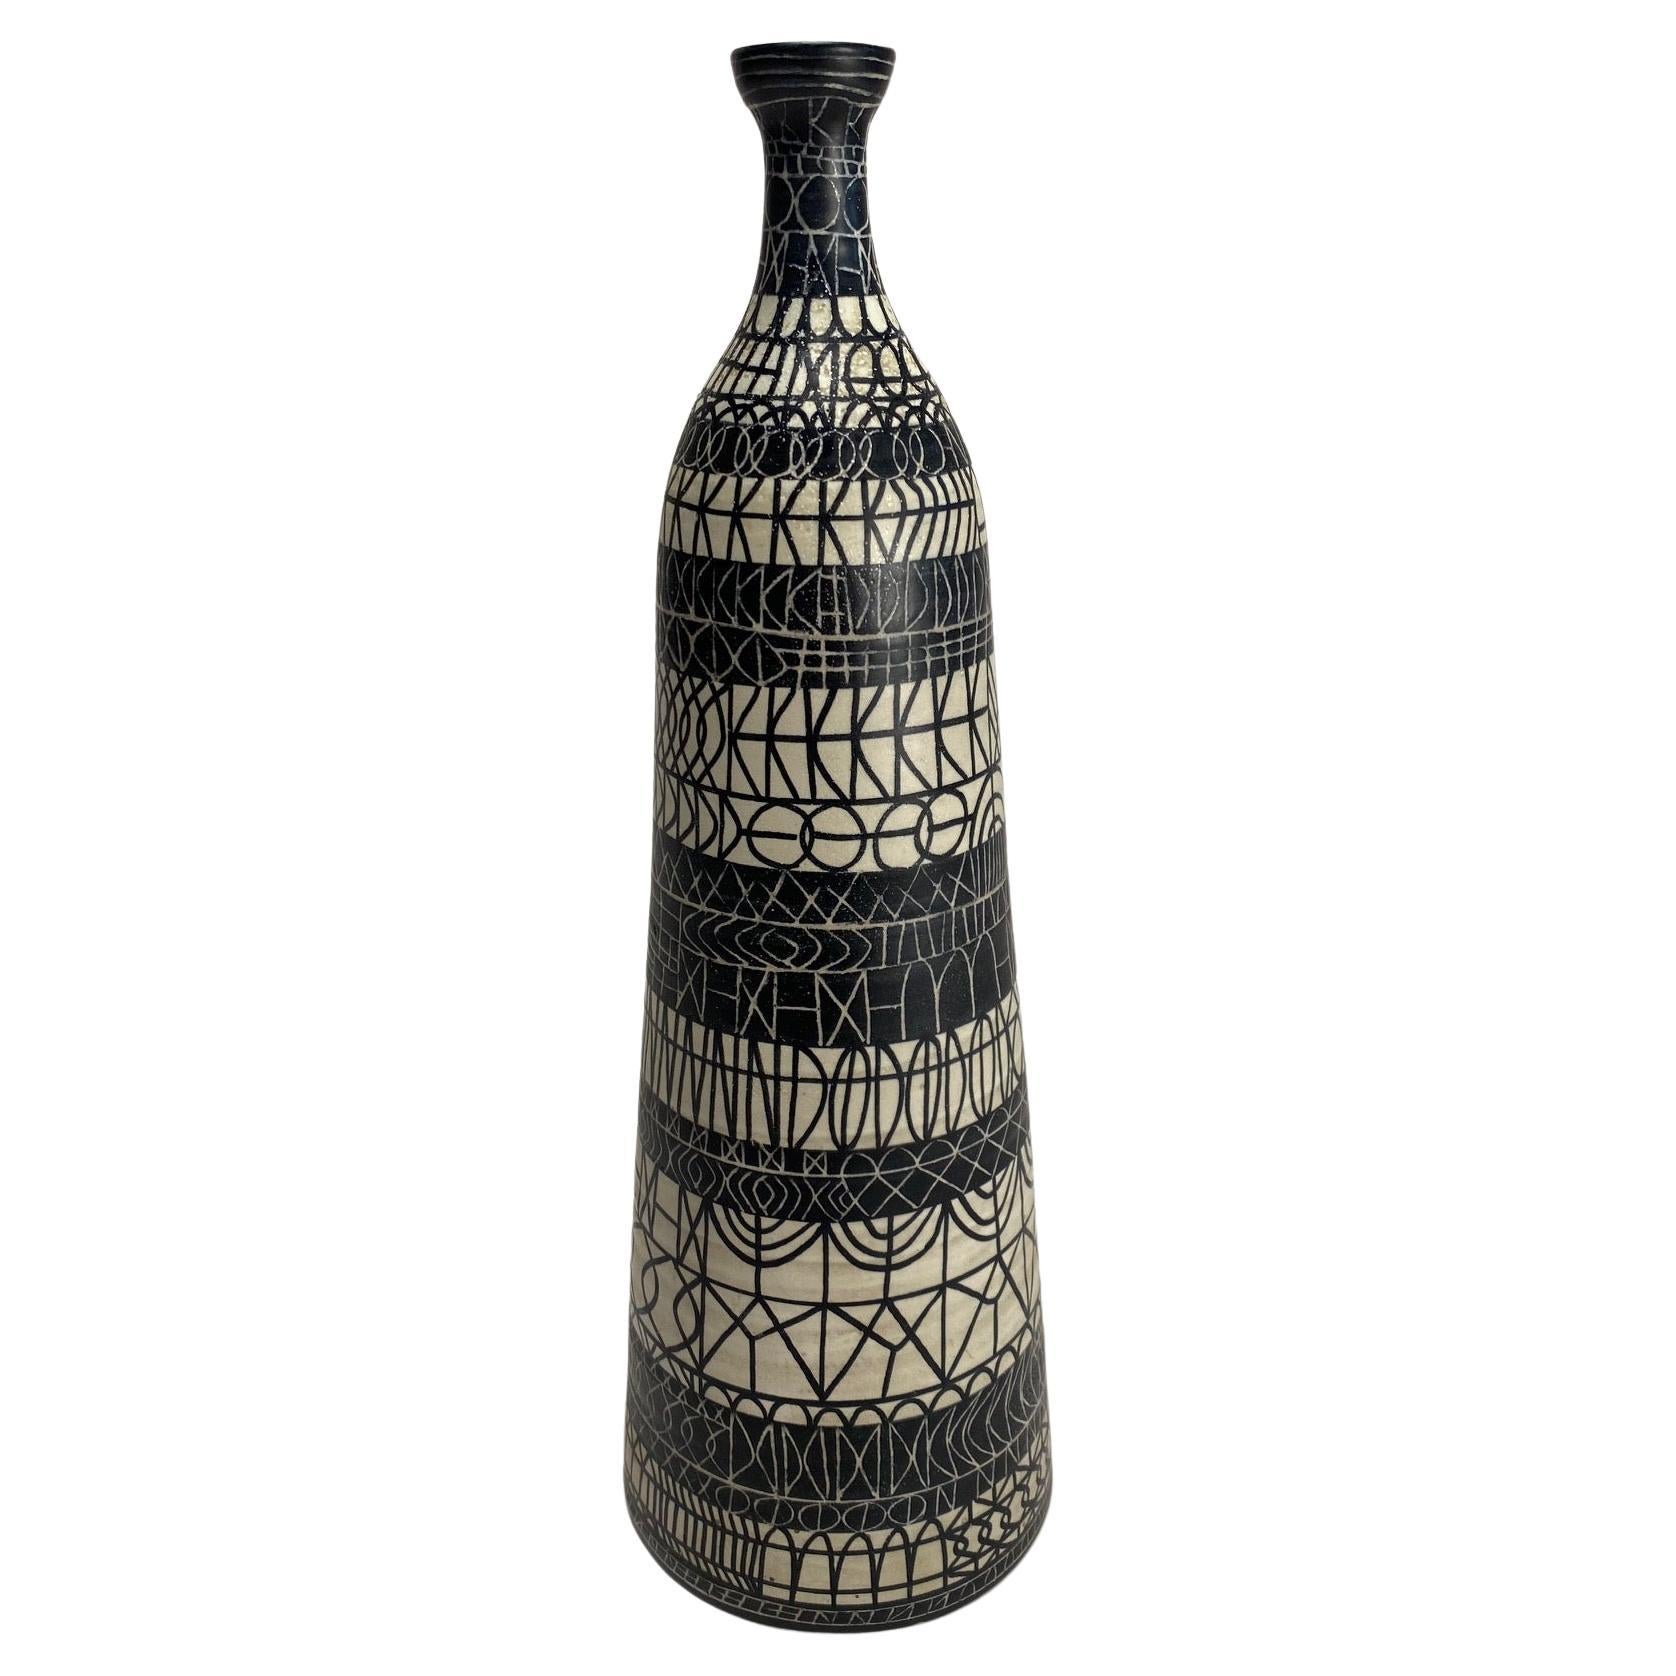 Atelier Mascarella, Large Decorated Ceramic Bottle, Italy, 1950s